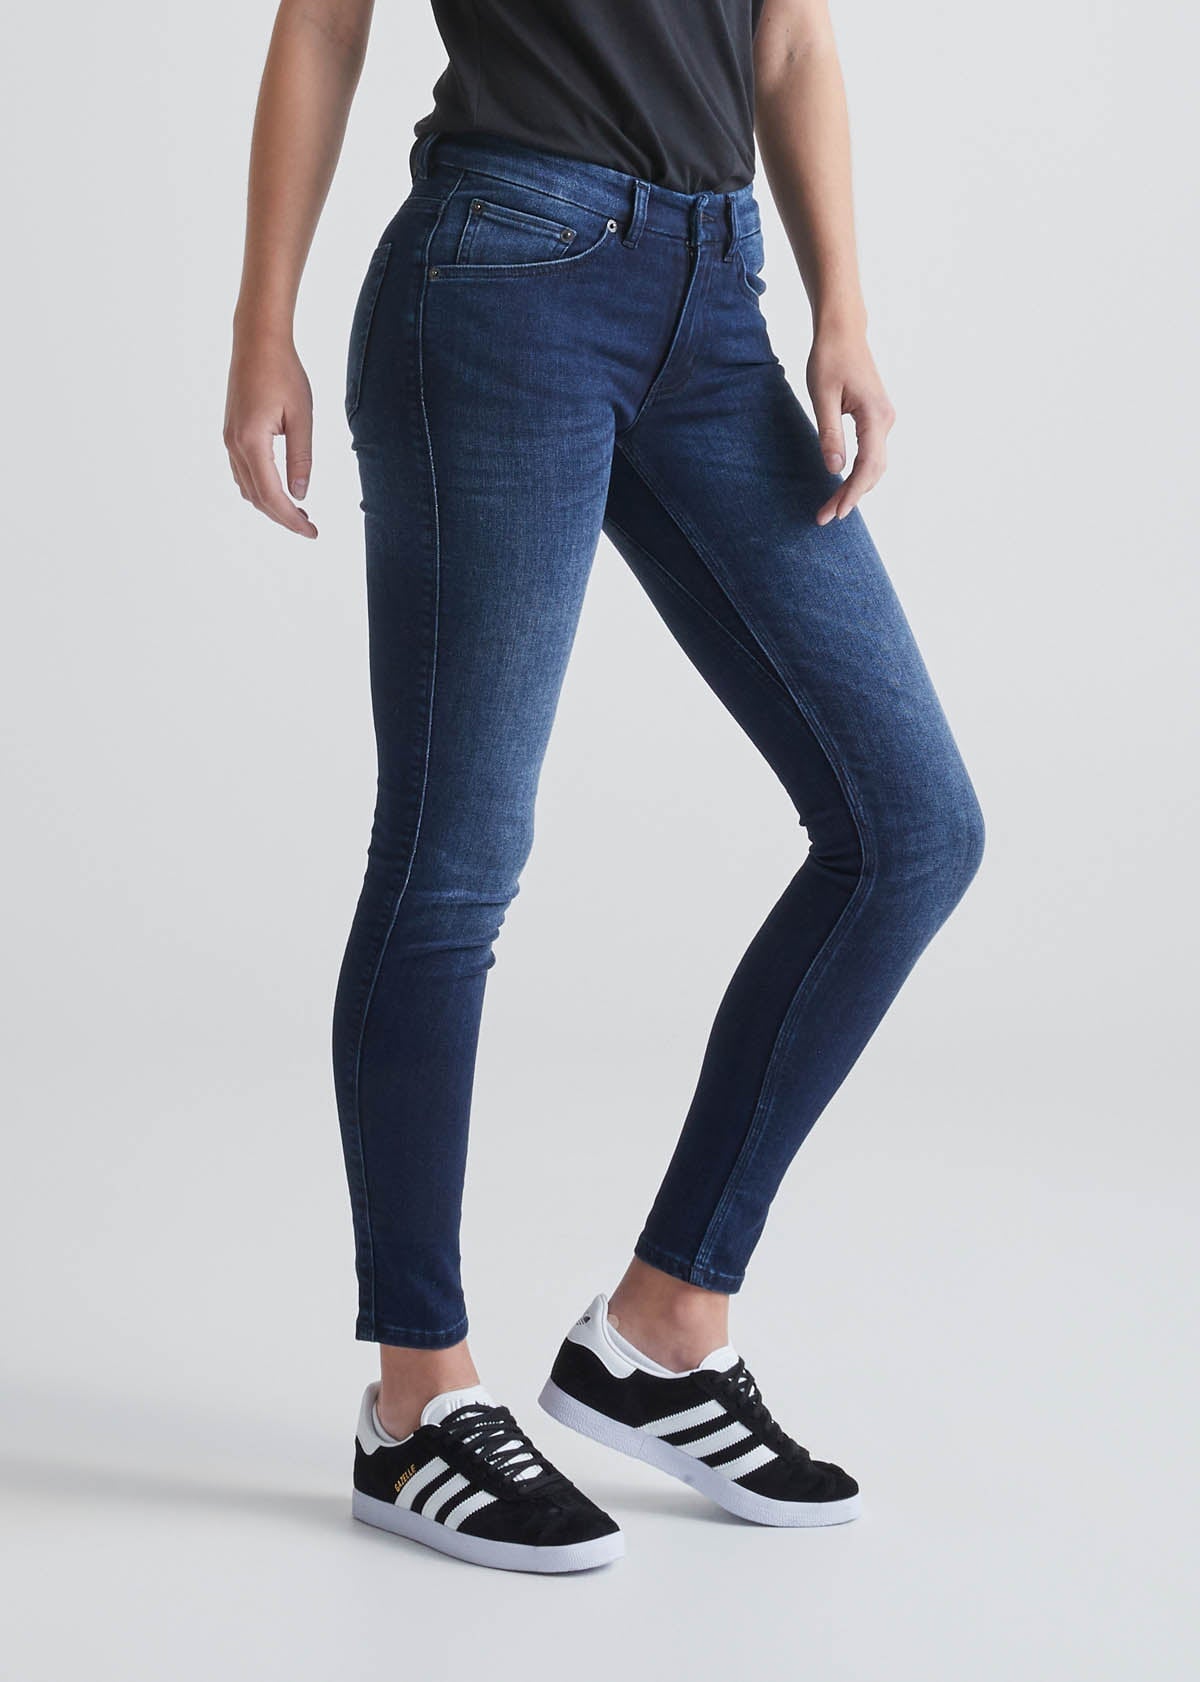 Women's Stretch Jeans, Women's Jeans